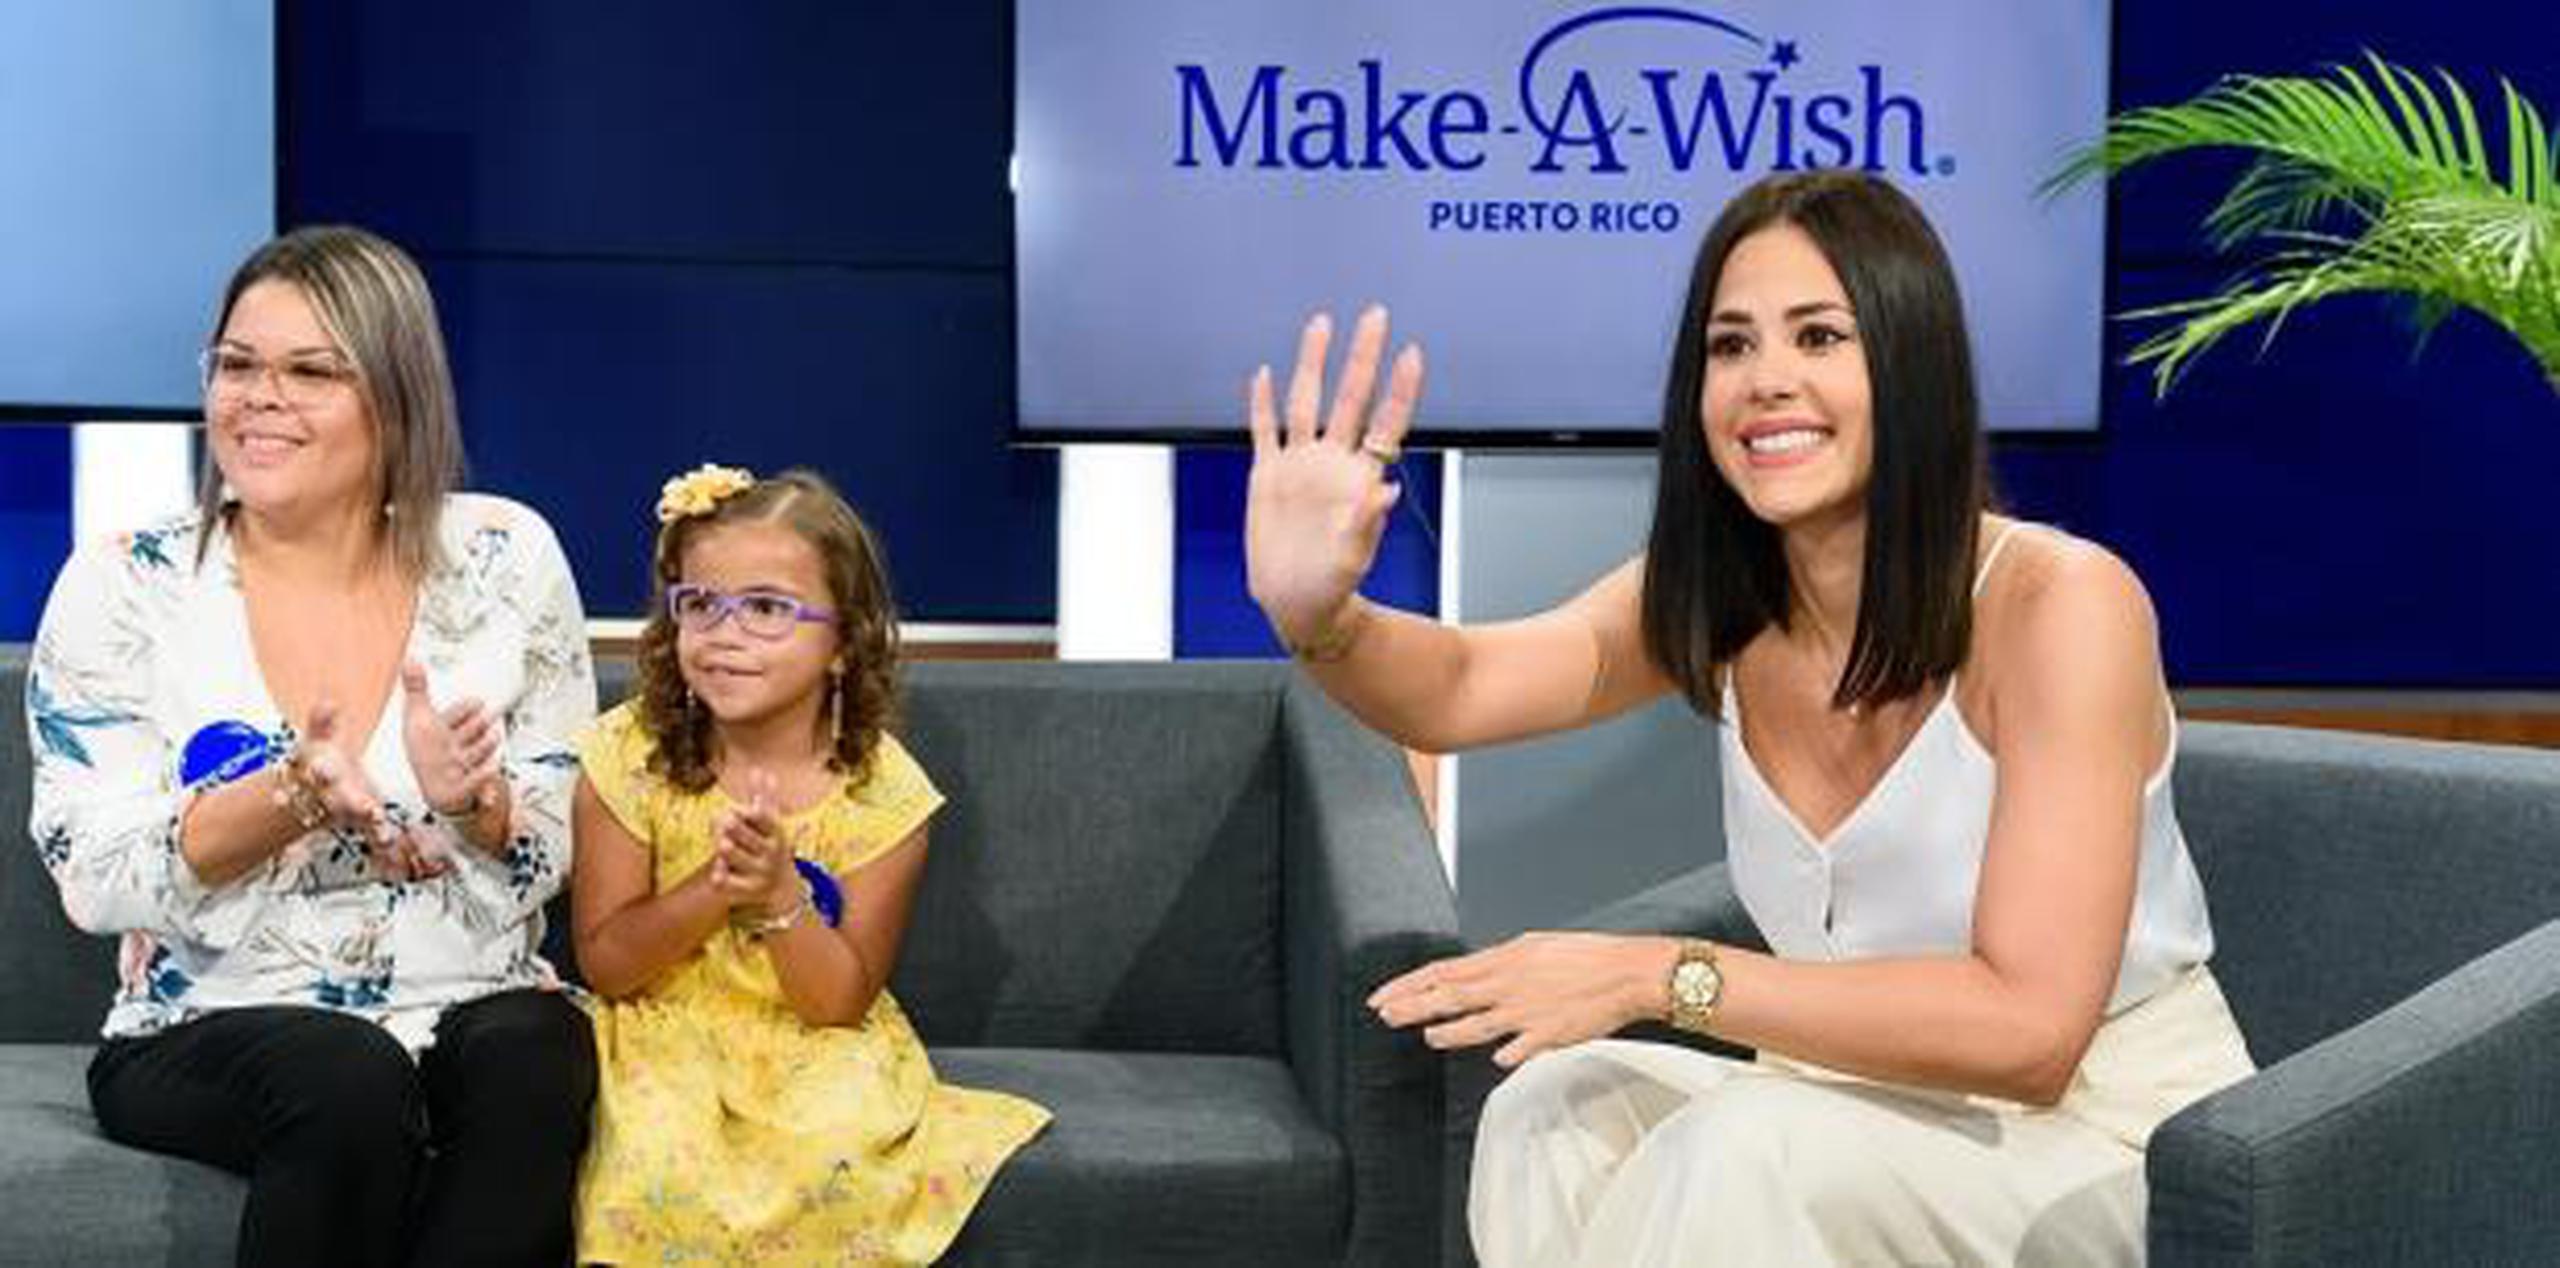 La presentadora de Día a día compartió su alegría de ser parte de la labor que realiza Make a Wish. (Suministrada)